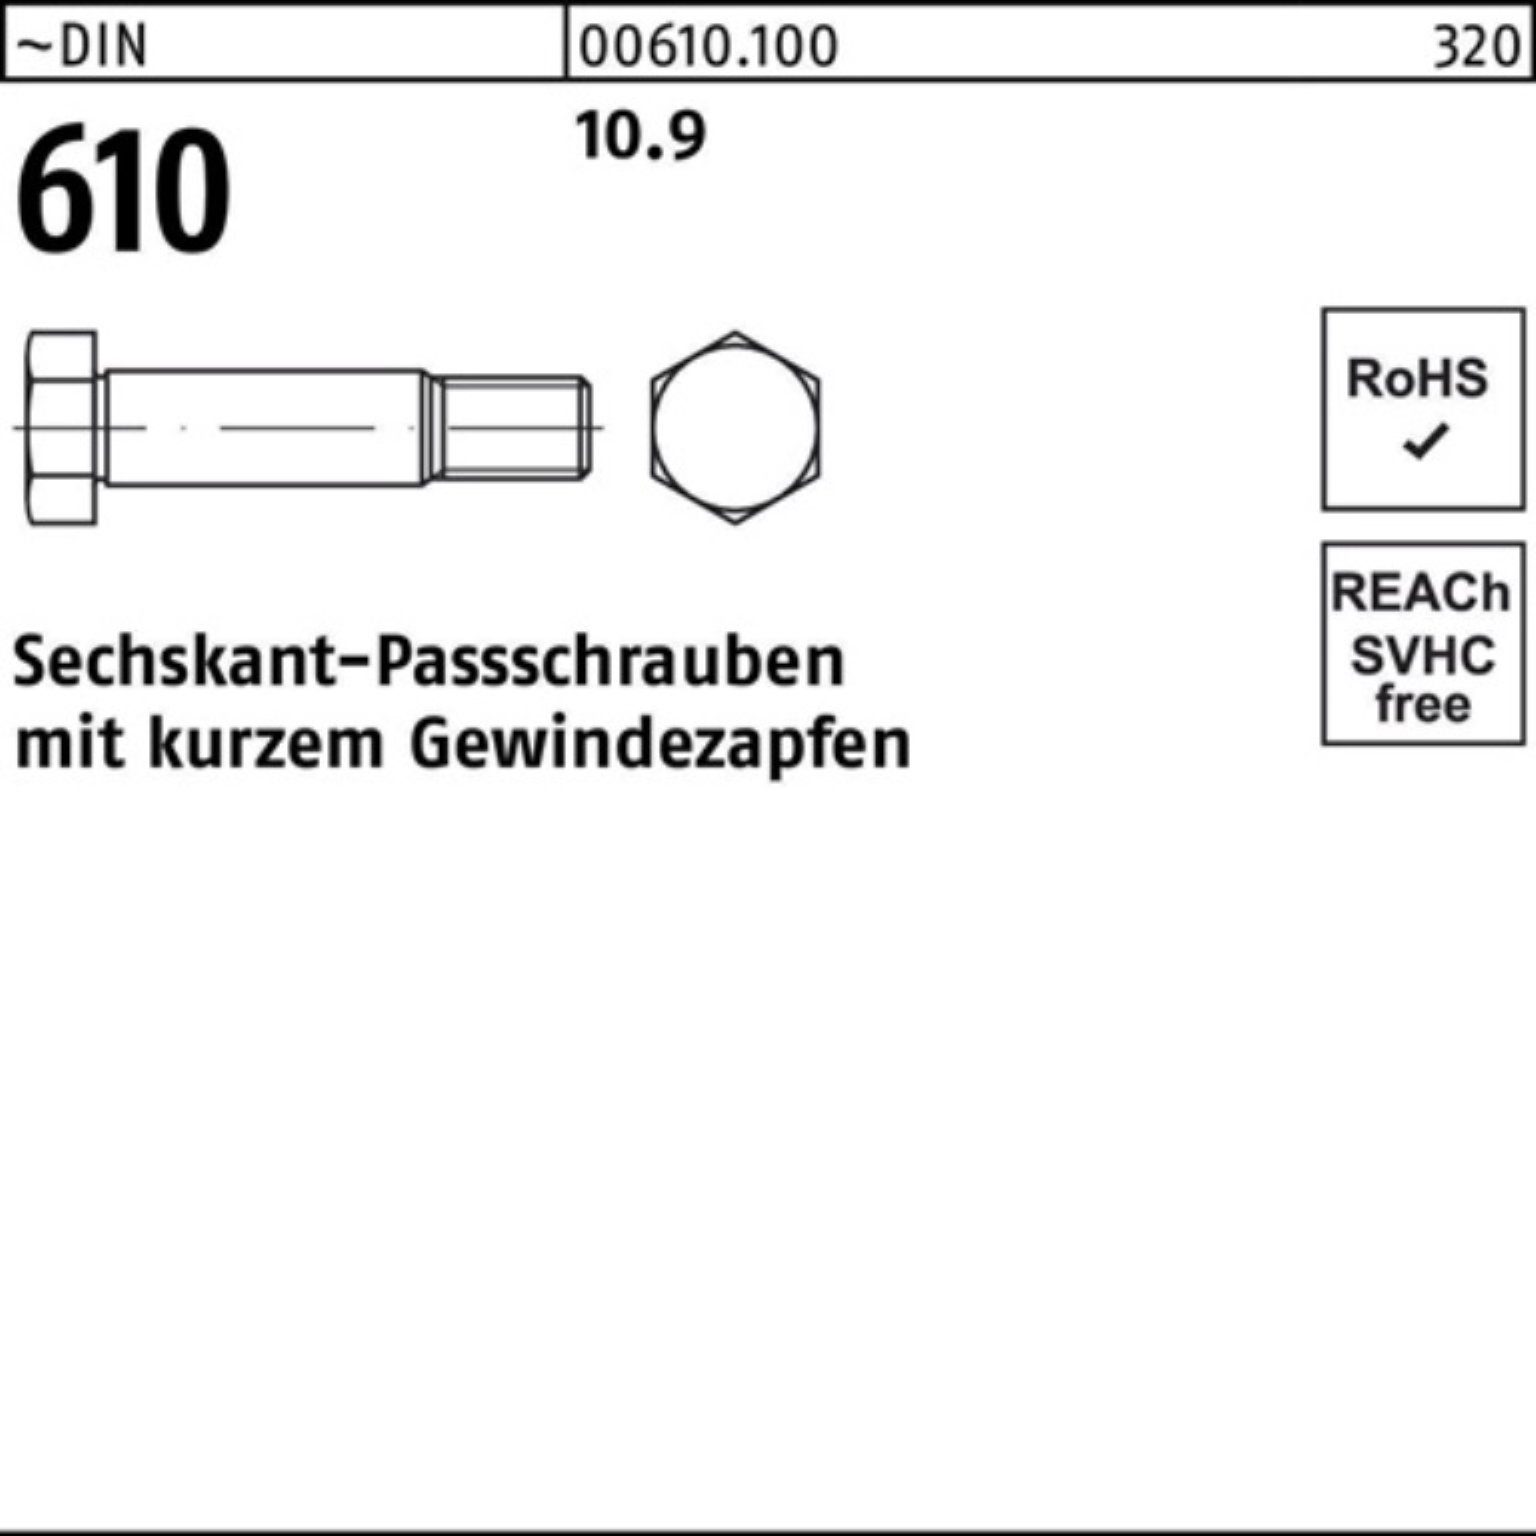 DIN Pack 610 Sechskantpassschraube Reyher M12x 30 Gewindezapfen 100er Schraube kurzem